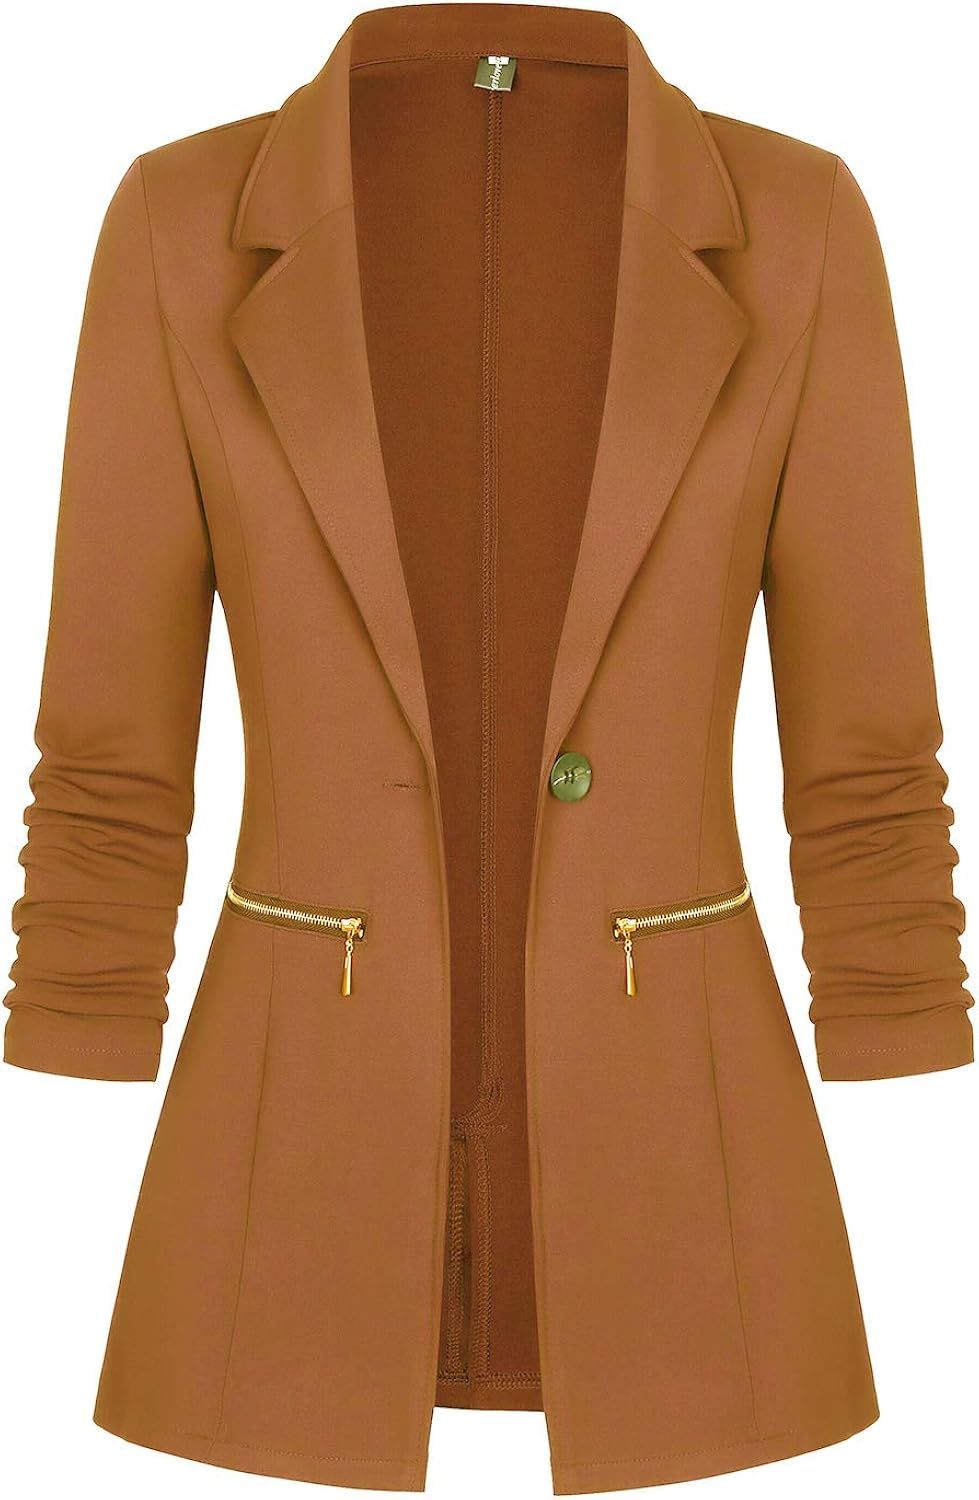 Genhoo Women's Long Sleeve Blazer Open Front Cardigan Jacket Work Office Blazer with Zipper Pocke... | Amazon (US)